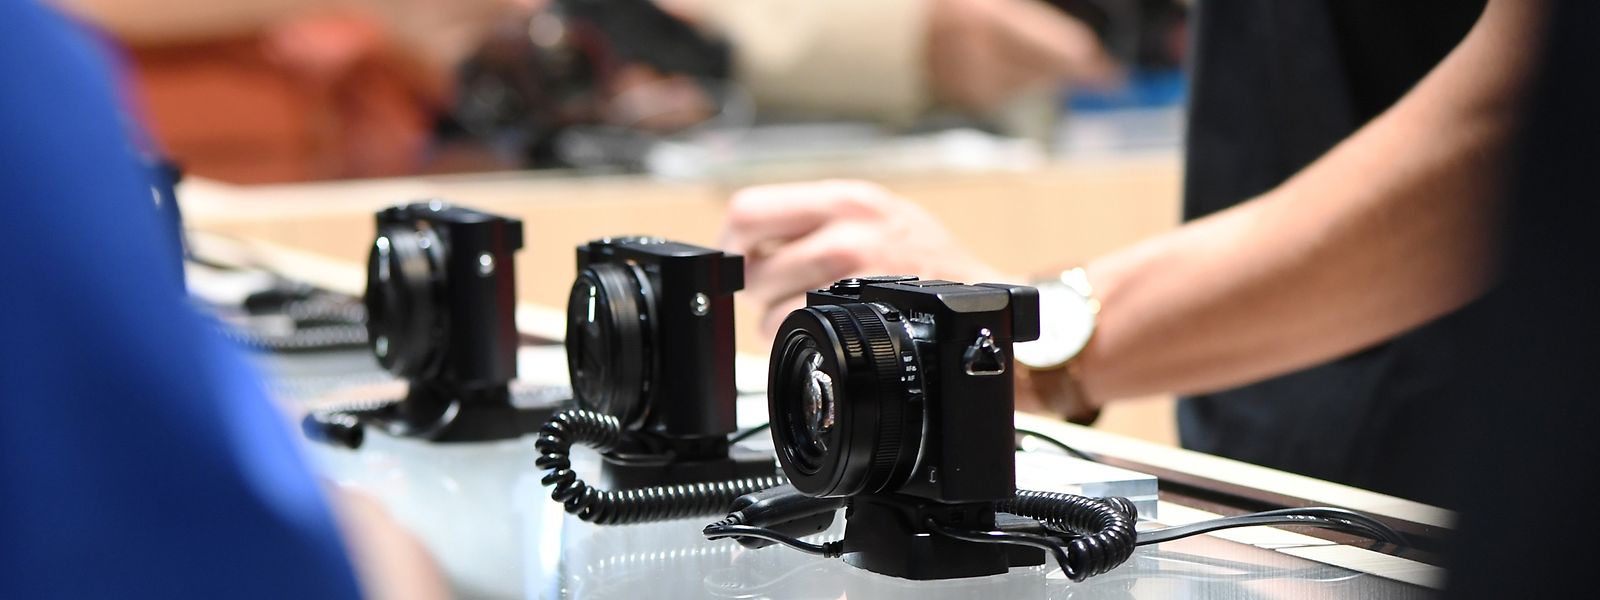 Hersteller bieten eine große Auswahl an Kompaktkameras. Die Konkurrenz durch Smartphones wächst jedoch immer mehr.
